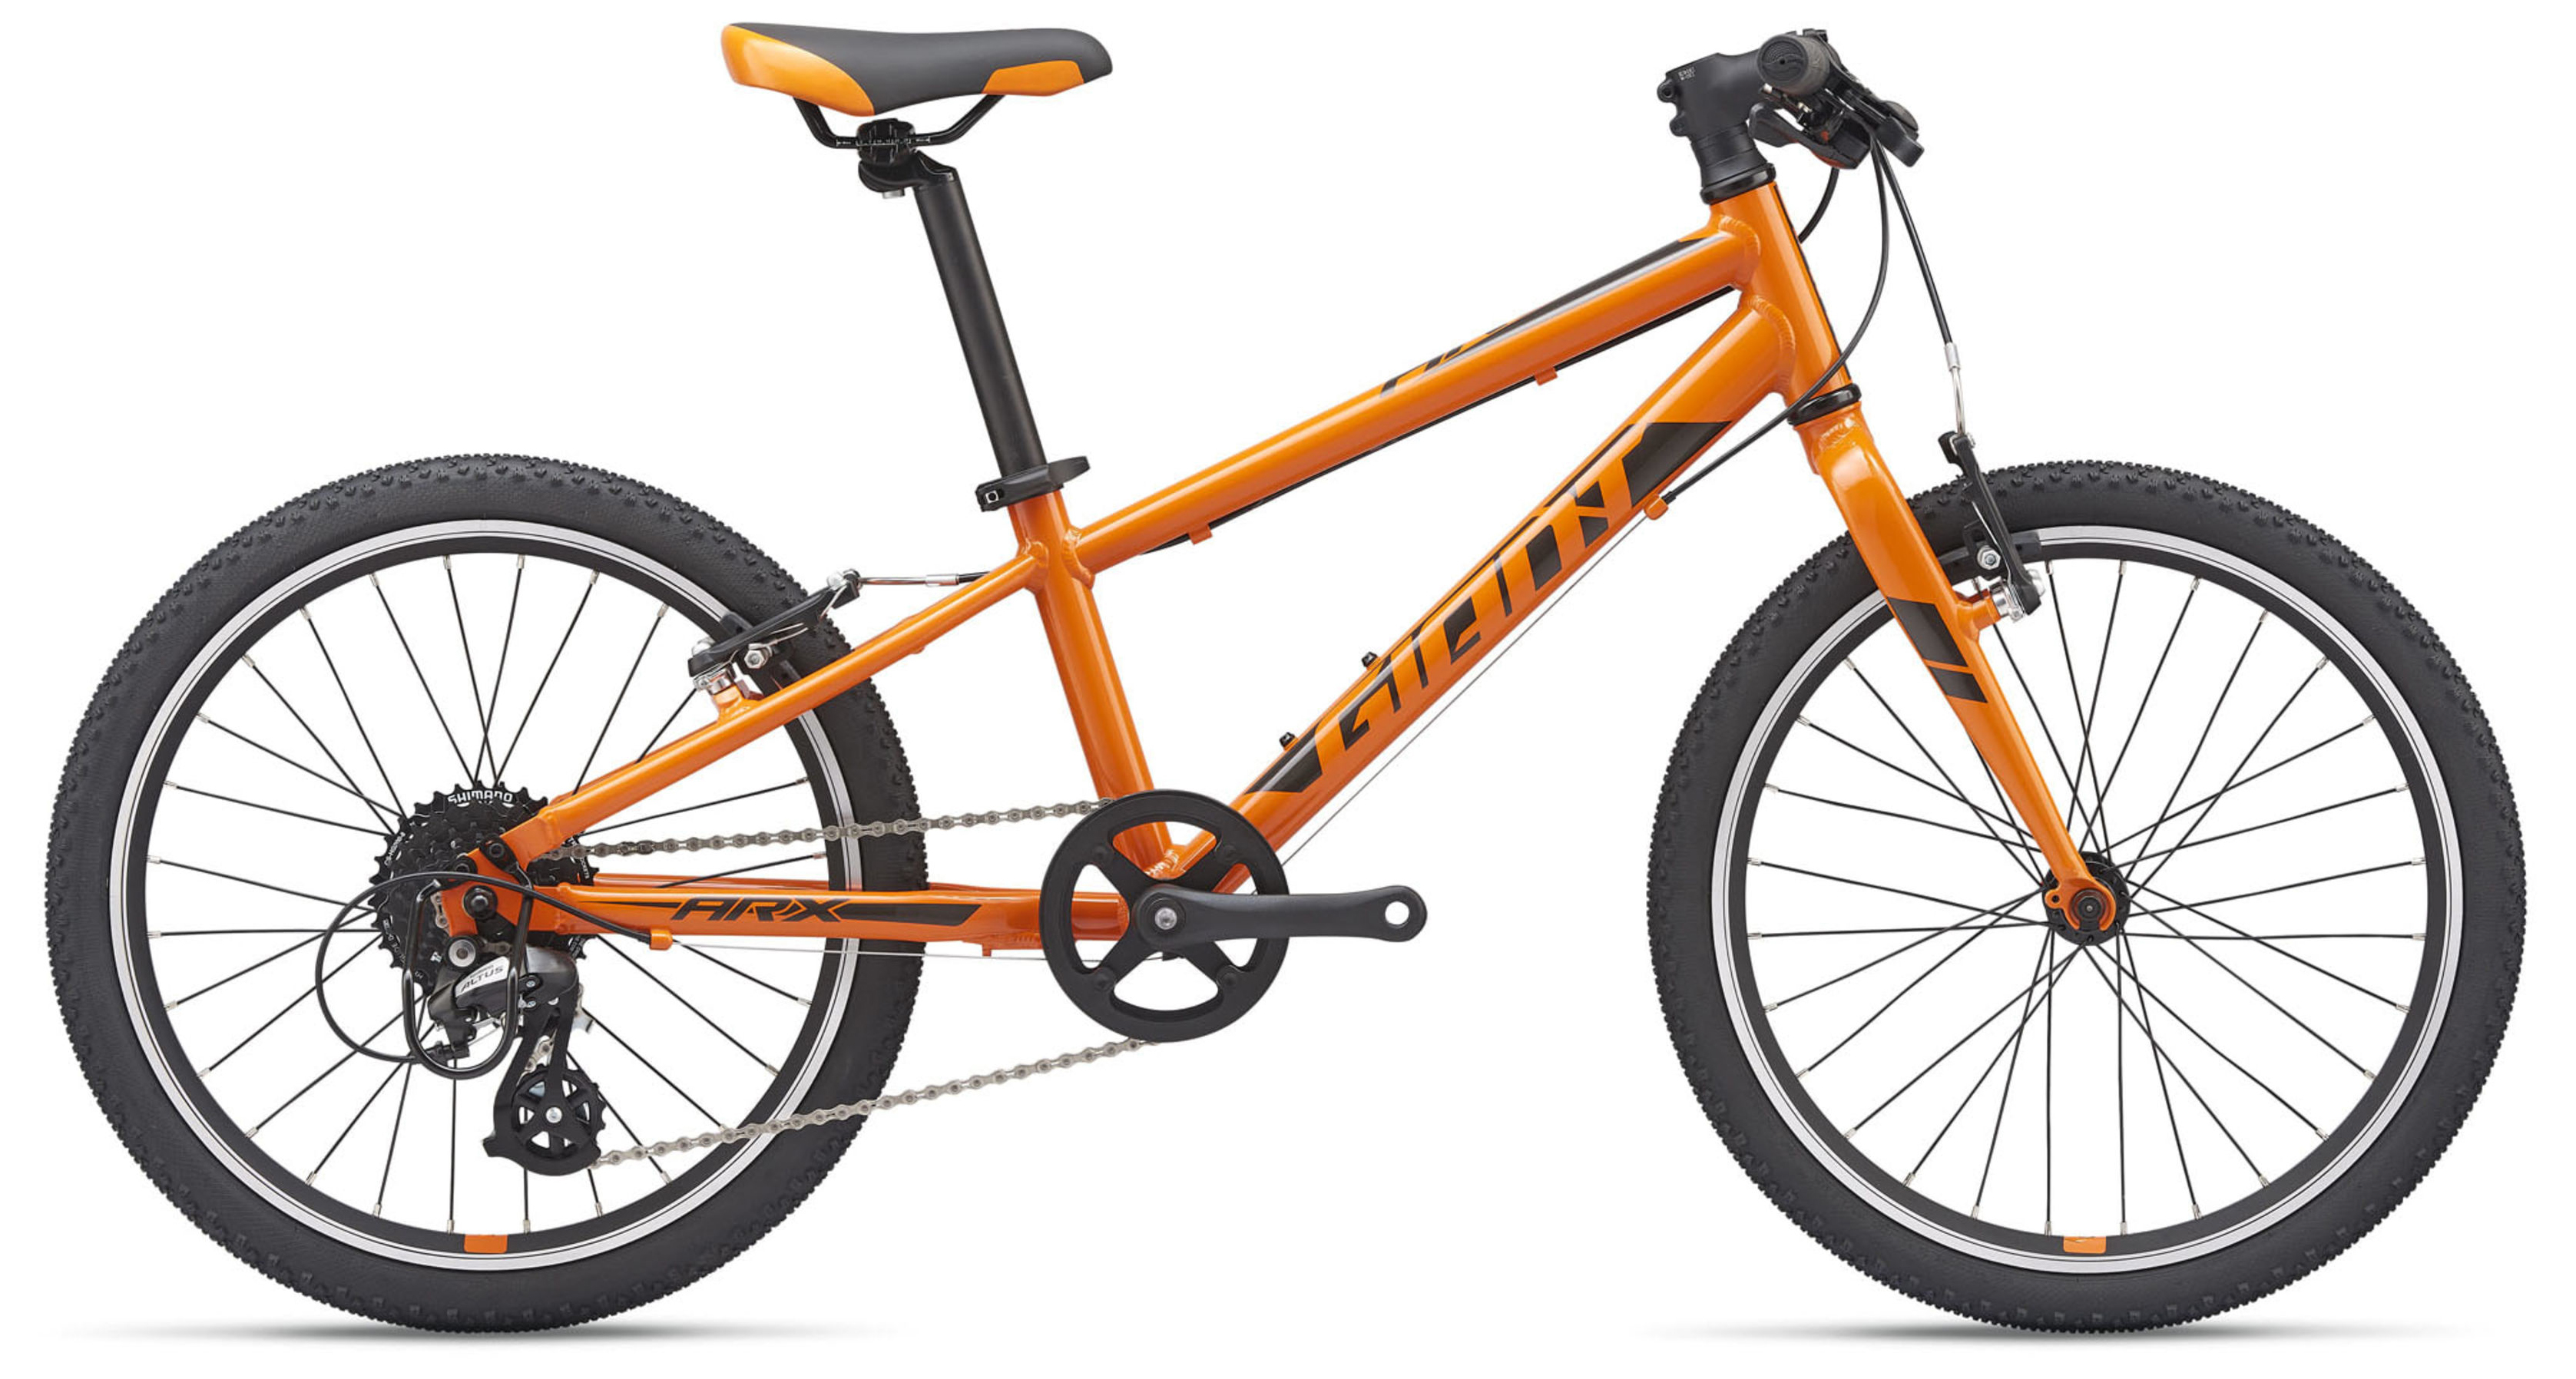  Велосипед Giant ARX 20 (2021) 2021